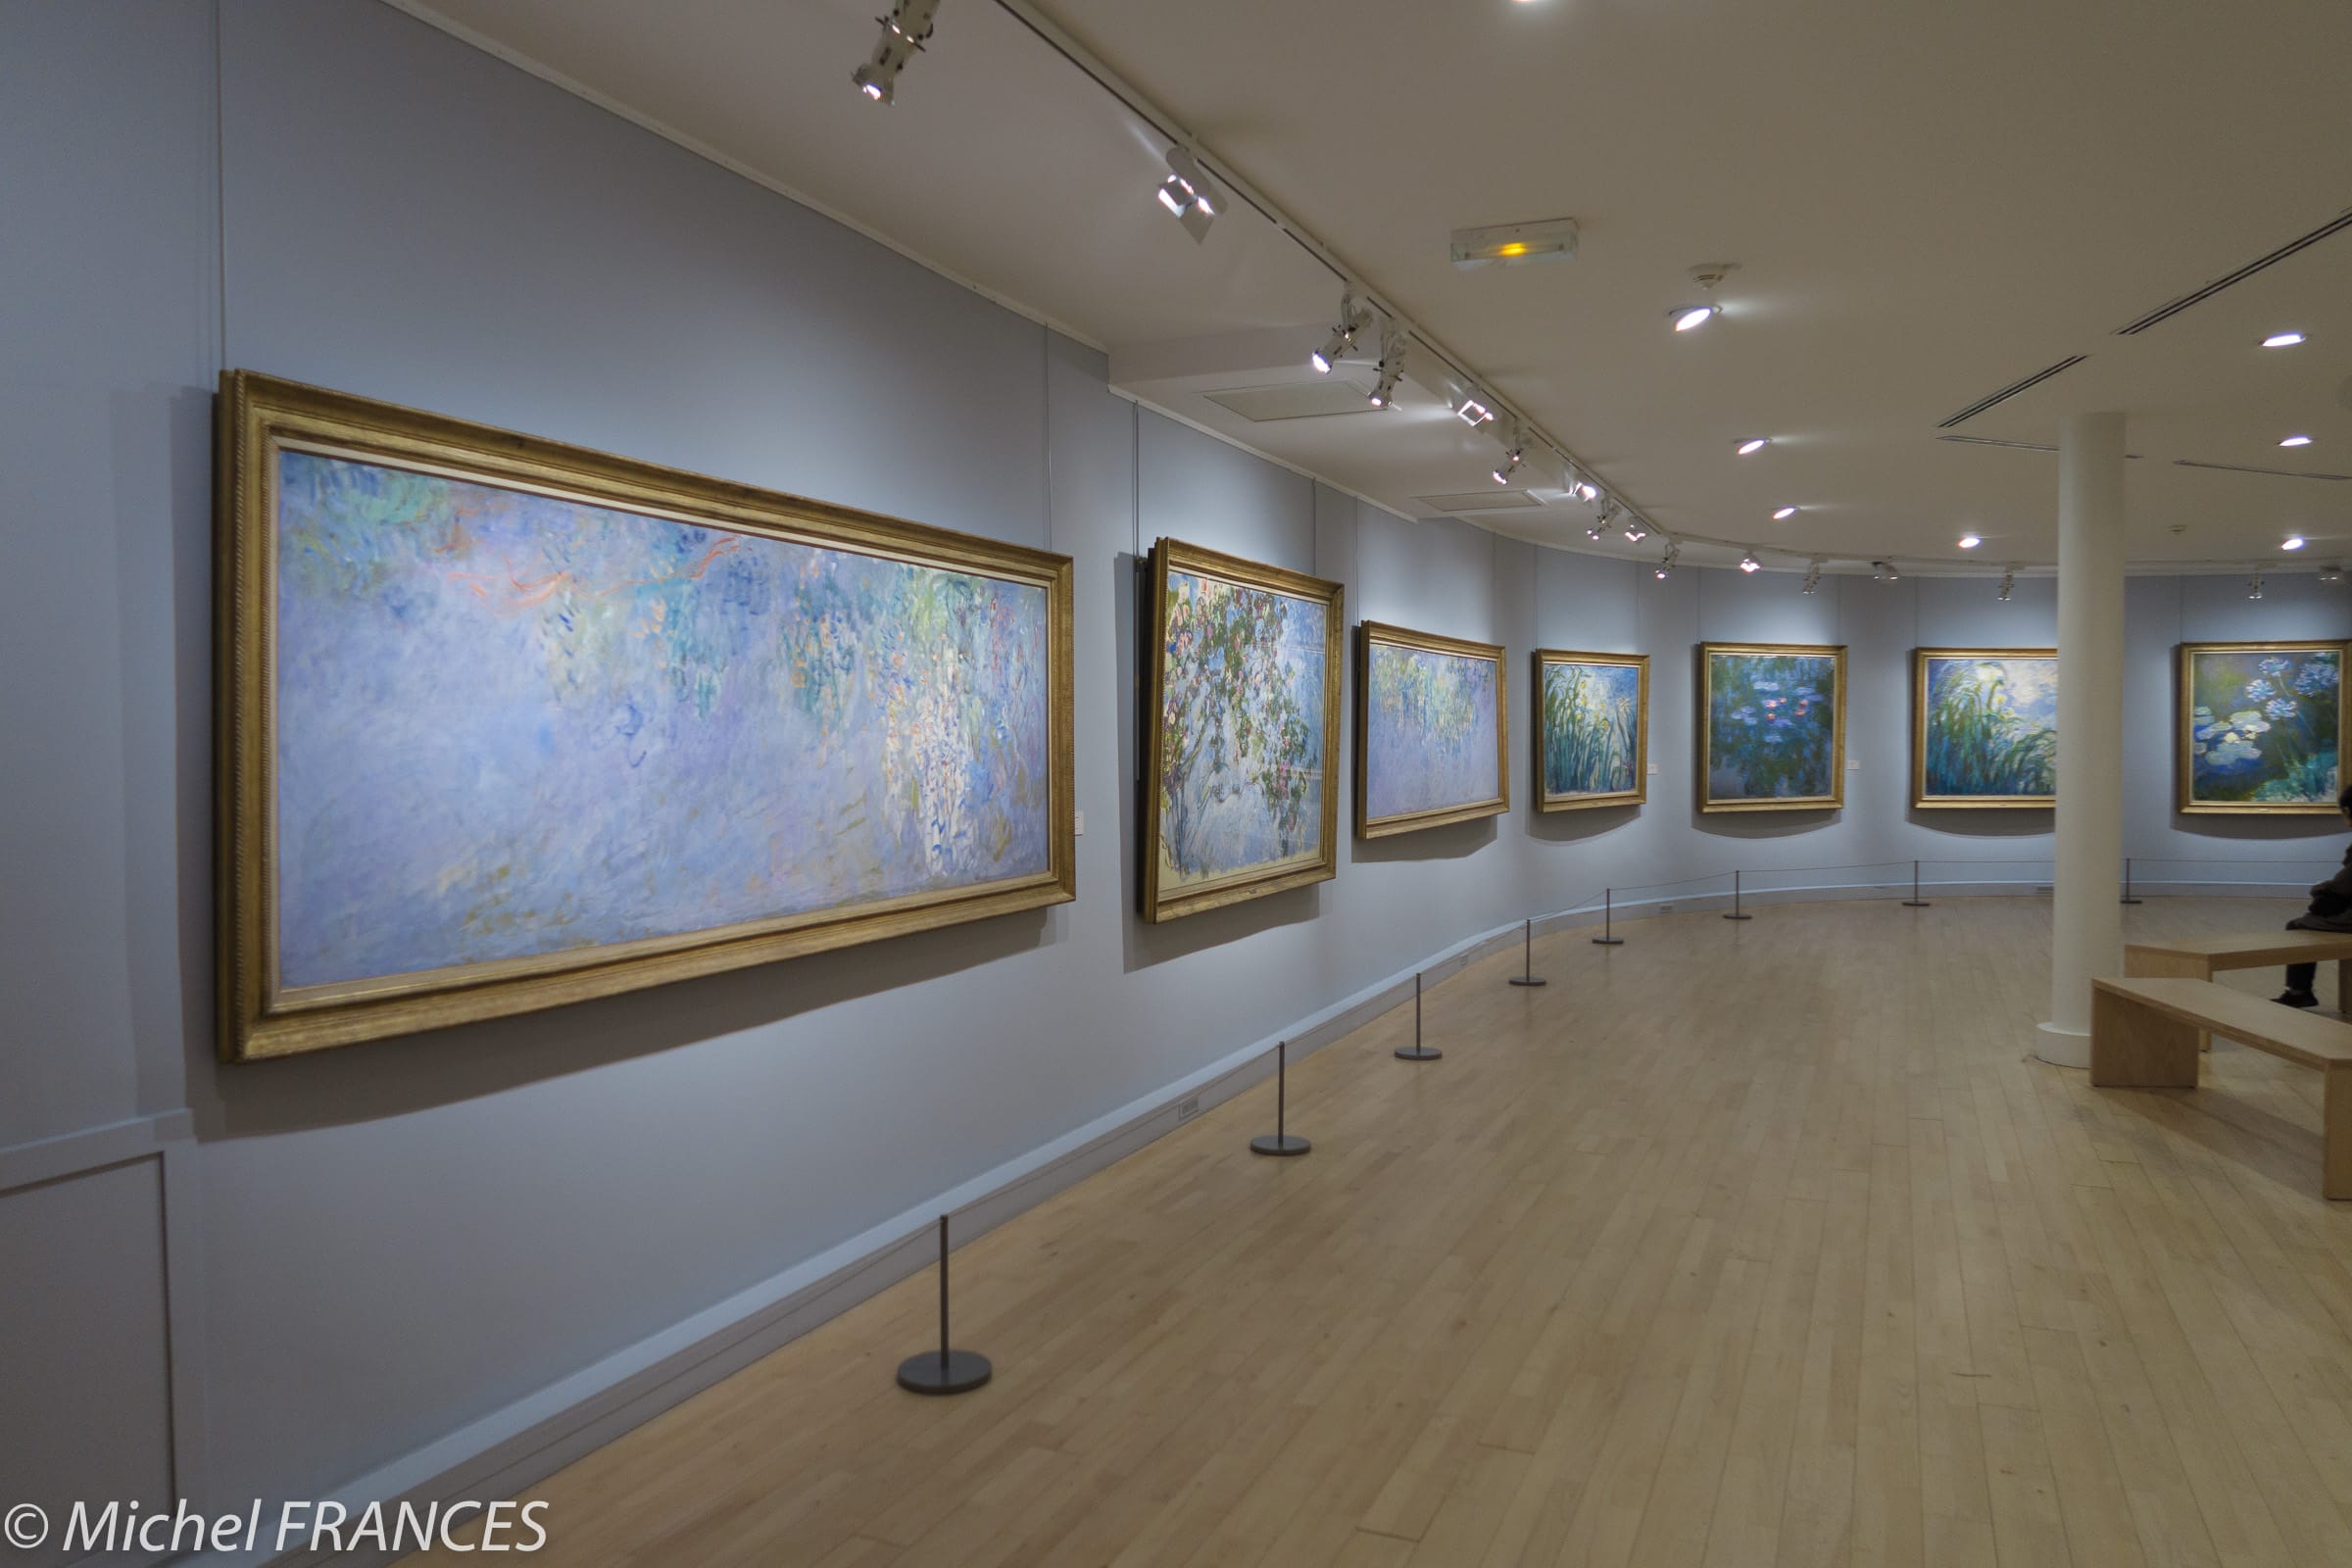 Peinture & Musique classique  Musée Marmottan Monet 